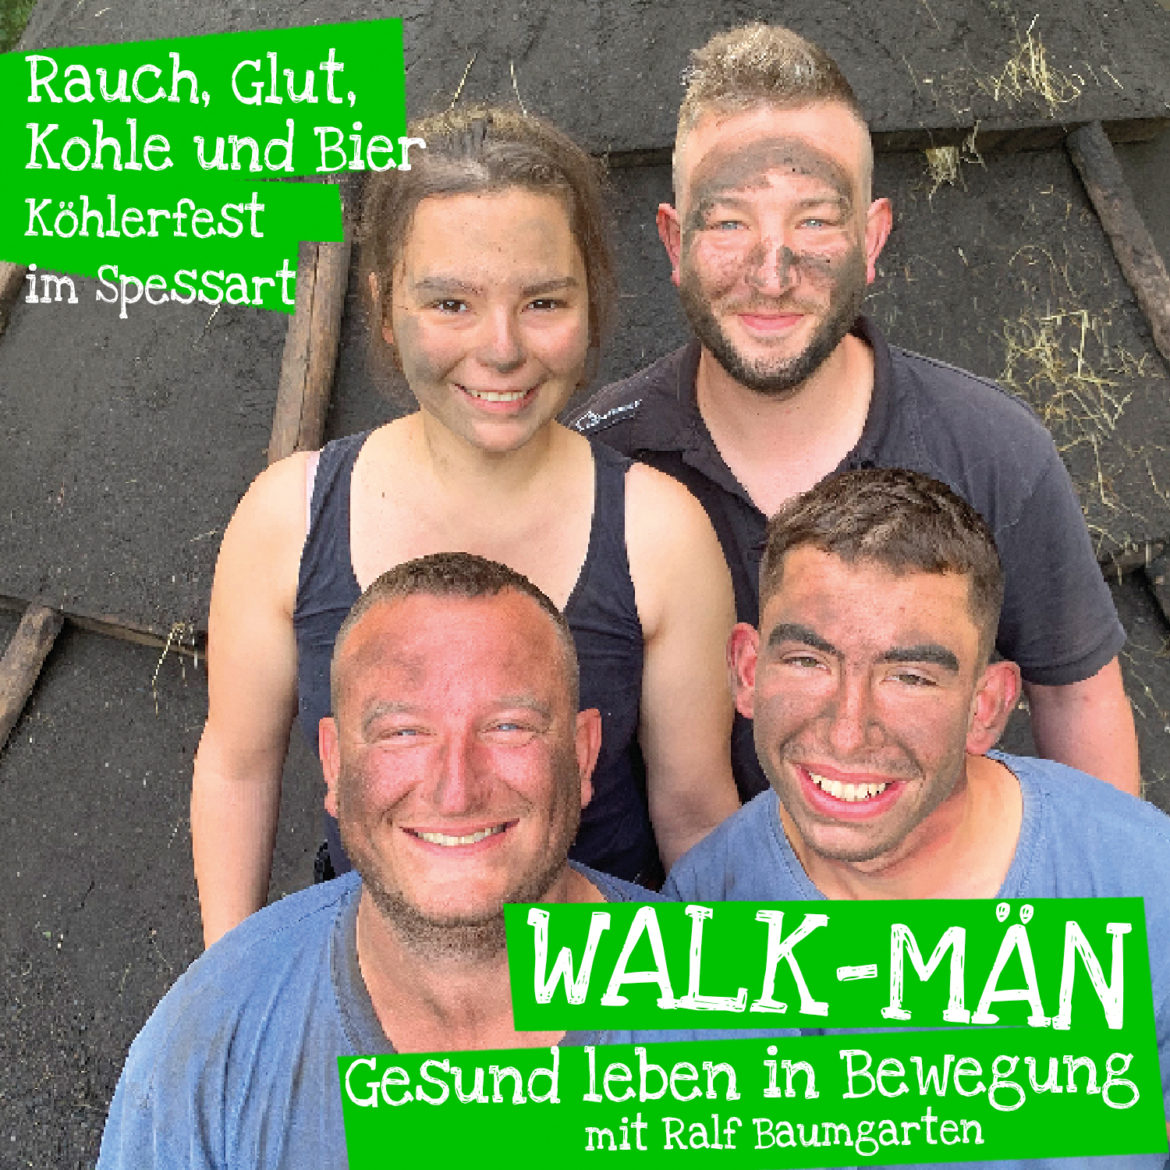 Walk-Män-Podcast: Köhlerfest im Spessart – Rauch, Glut, Kohle und Bier